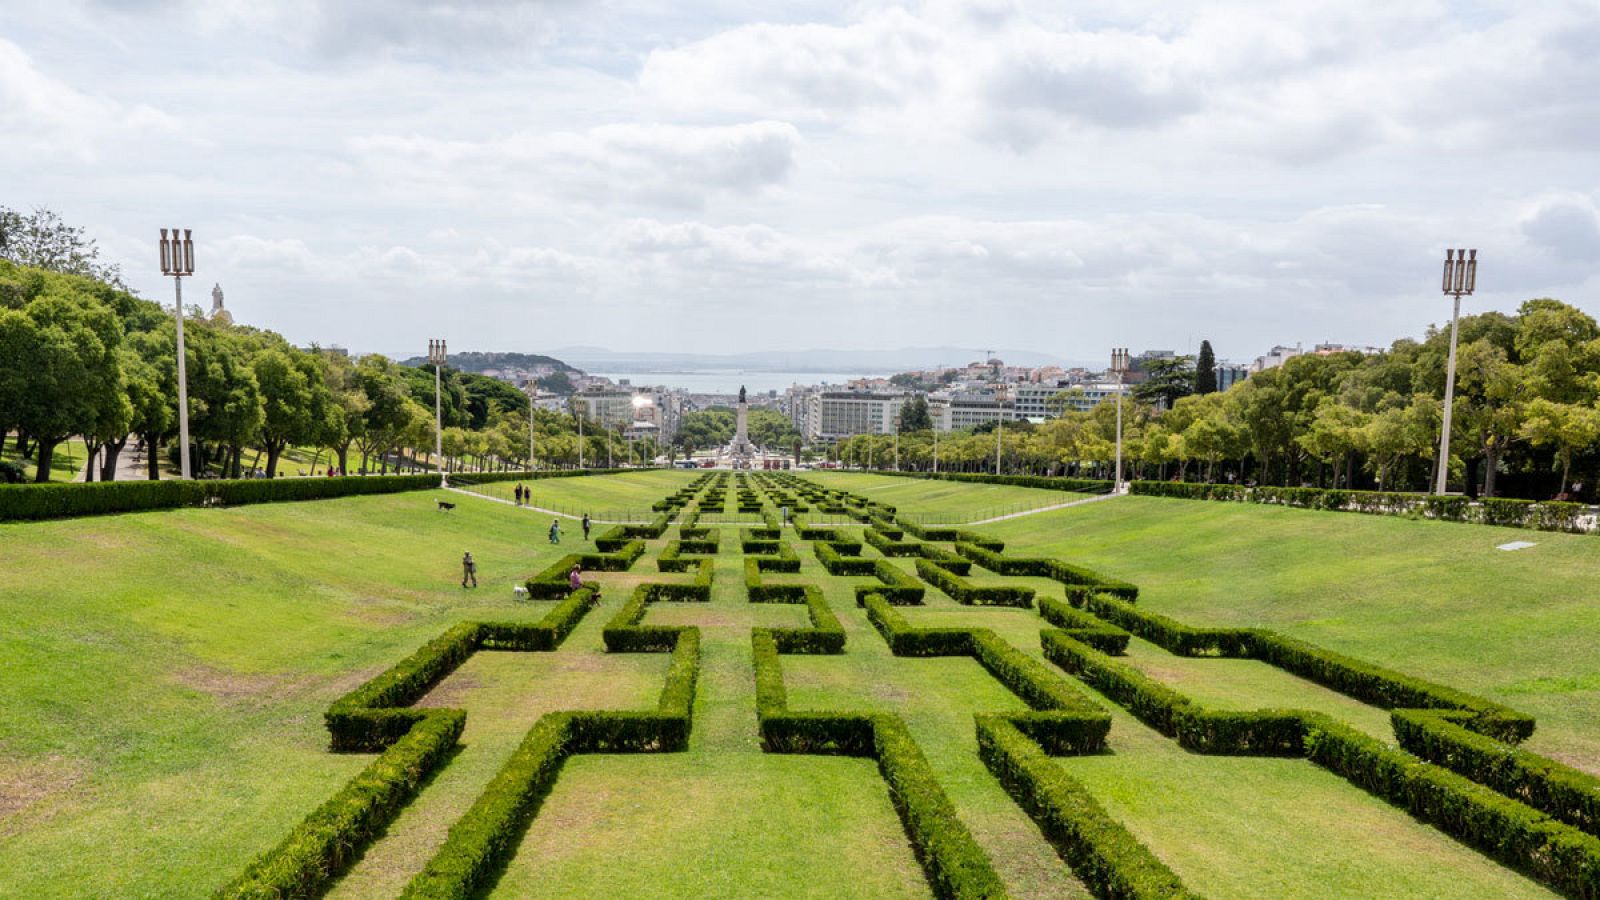 Vista del parque Eduardo VII, situado en el centro de Lisboa, Portugal